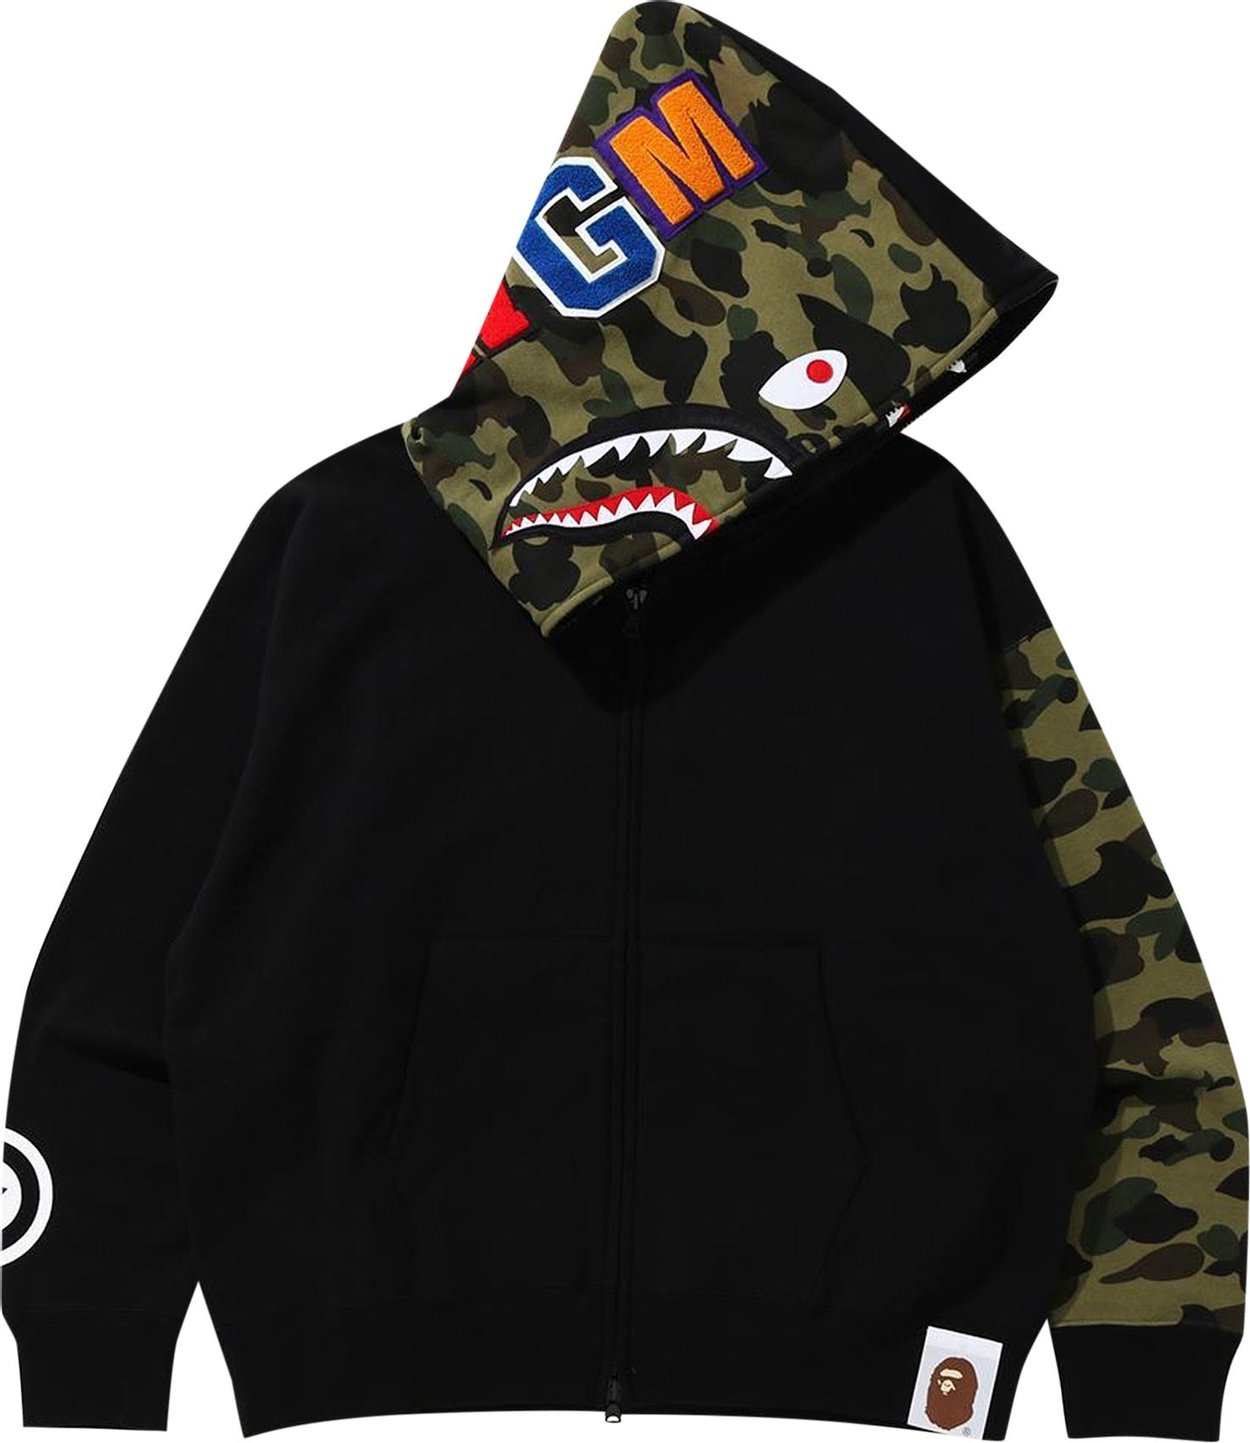 Buy BAPE Giant Shark Full Zip Hoodie 'Black' - 1G70 115 018 BLACK | GOAT